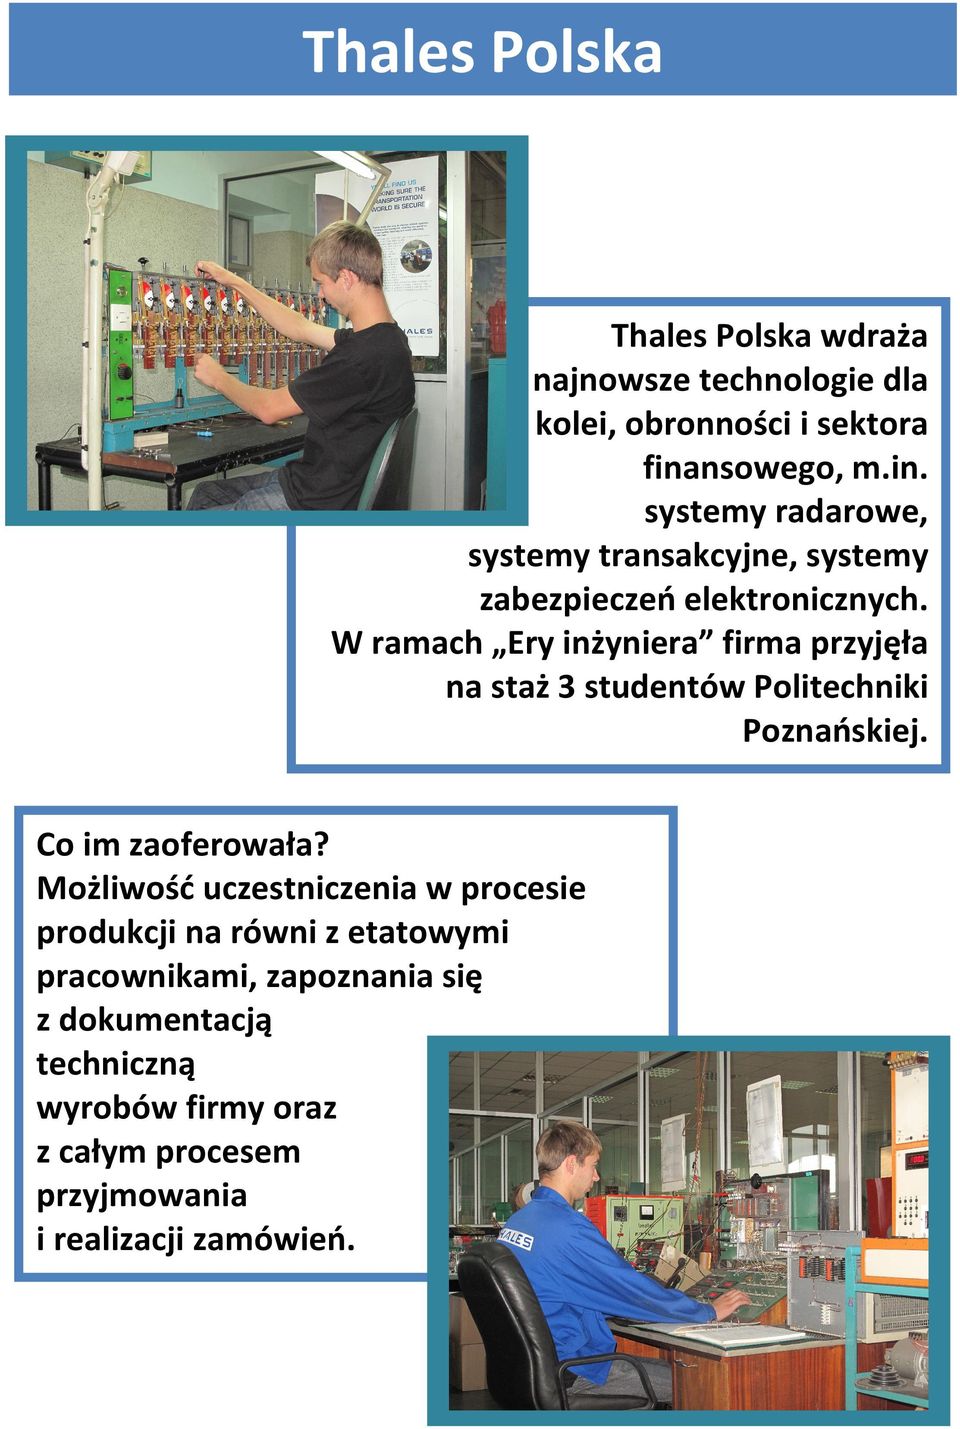 W ramach Ery inżyniera firma przyjęła na staż 3 studentów Politechniki Poznańskiej. Co im zaoferowała?